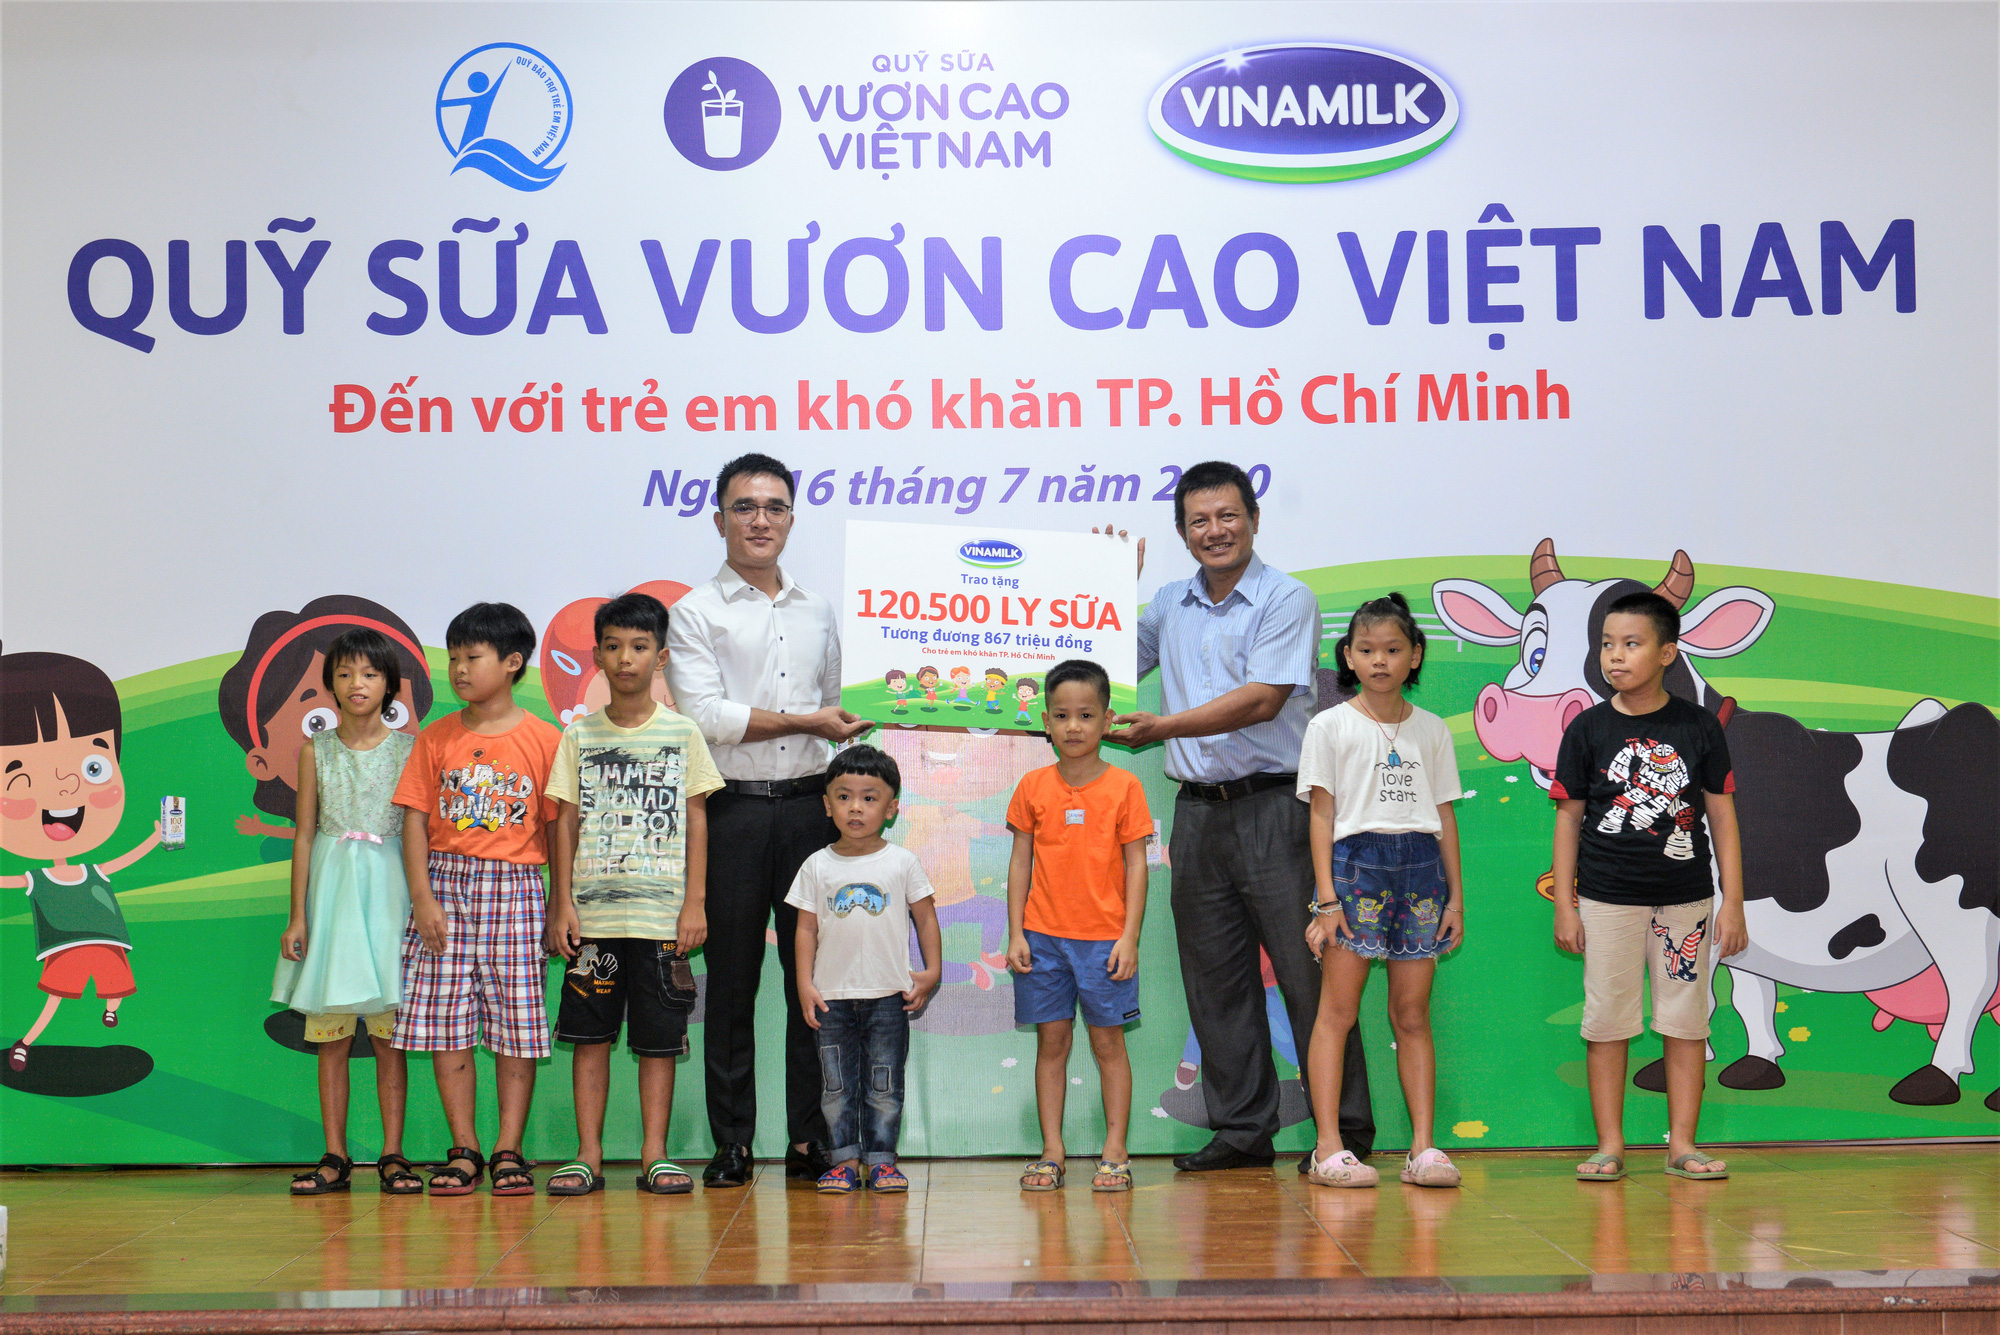 Hành trình xuyên mùa dịch của Quỹ sữa Vươn cao Việt Nam - Ảnh 16.